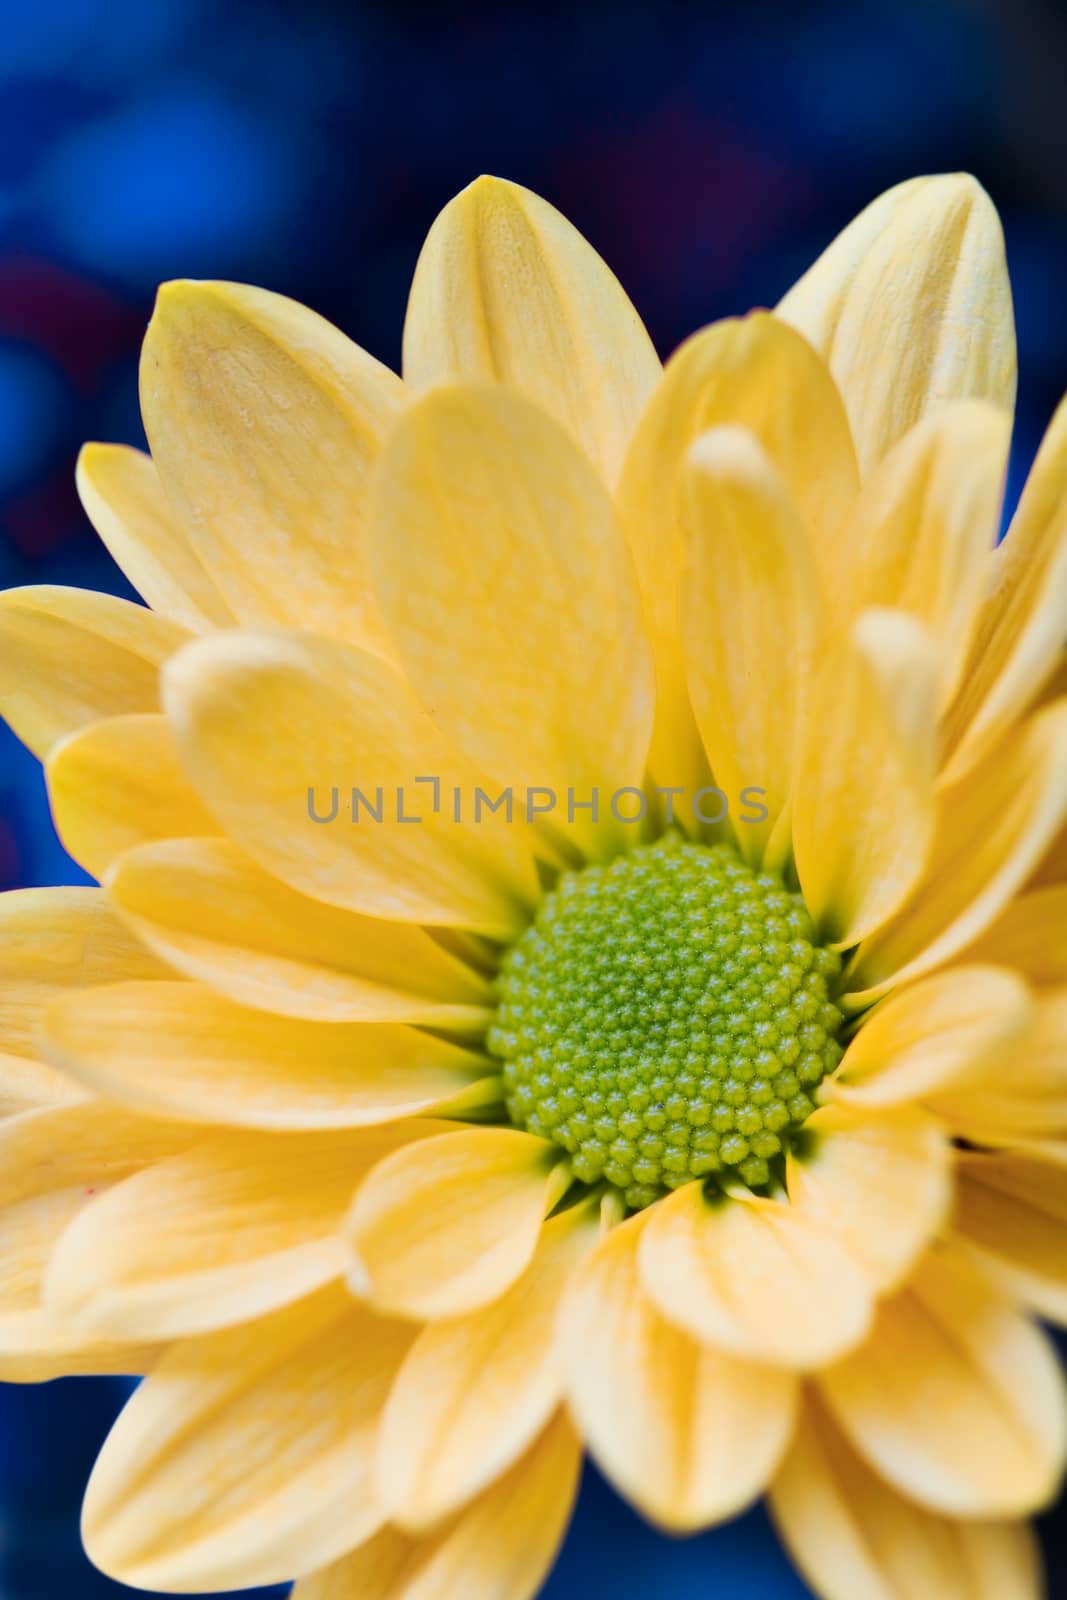 beautiful yellow flower petals closeup by ozaiachin